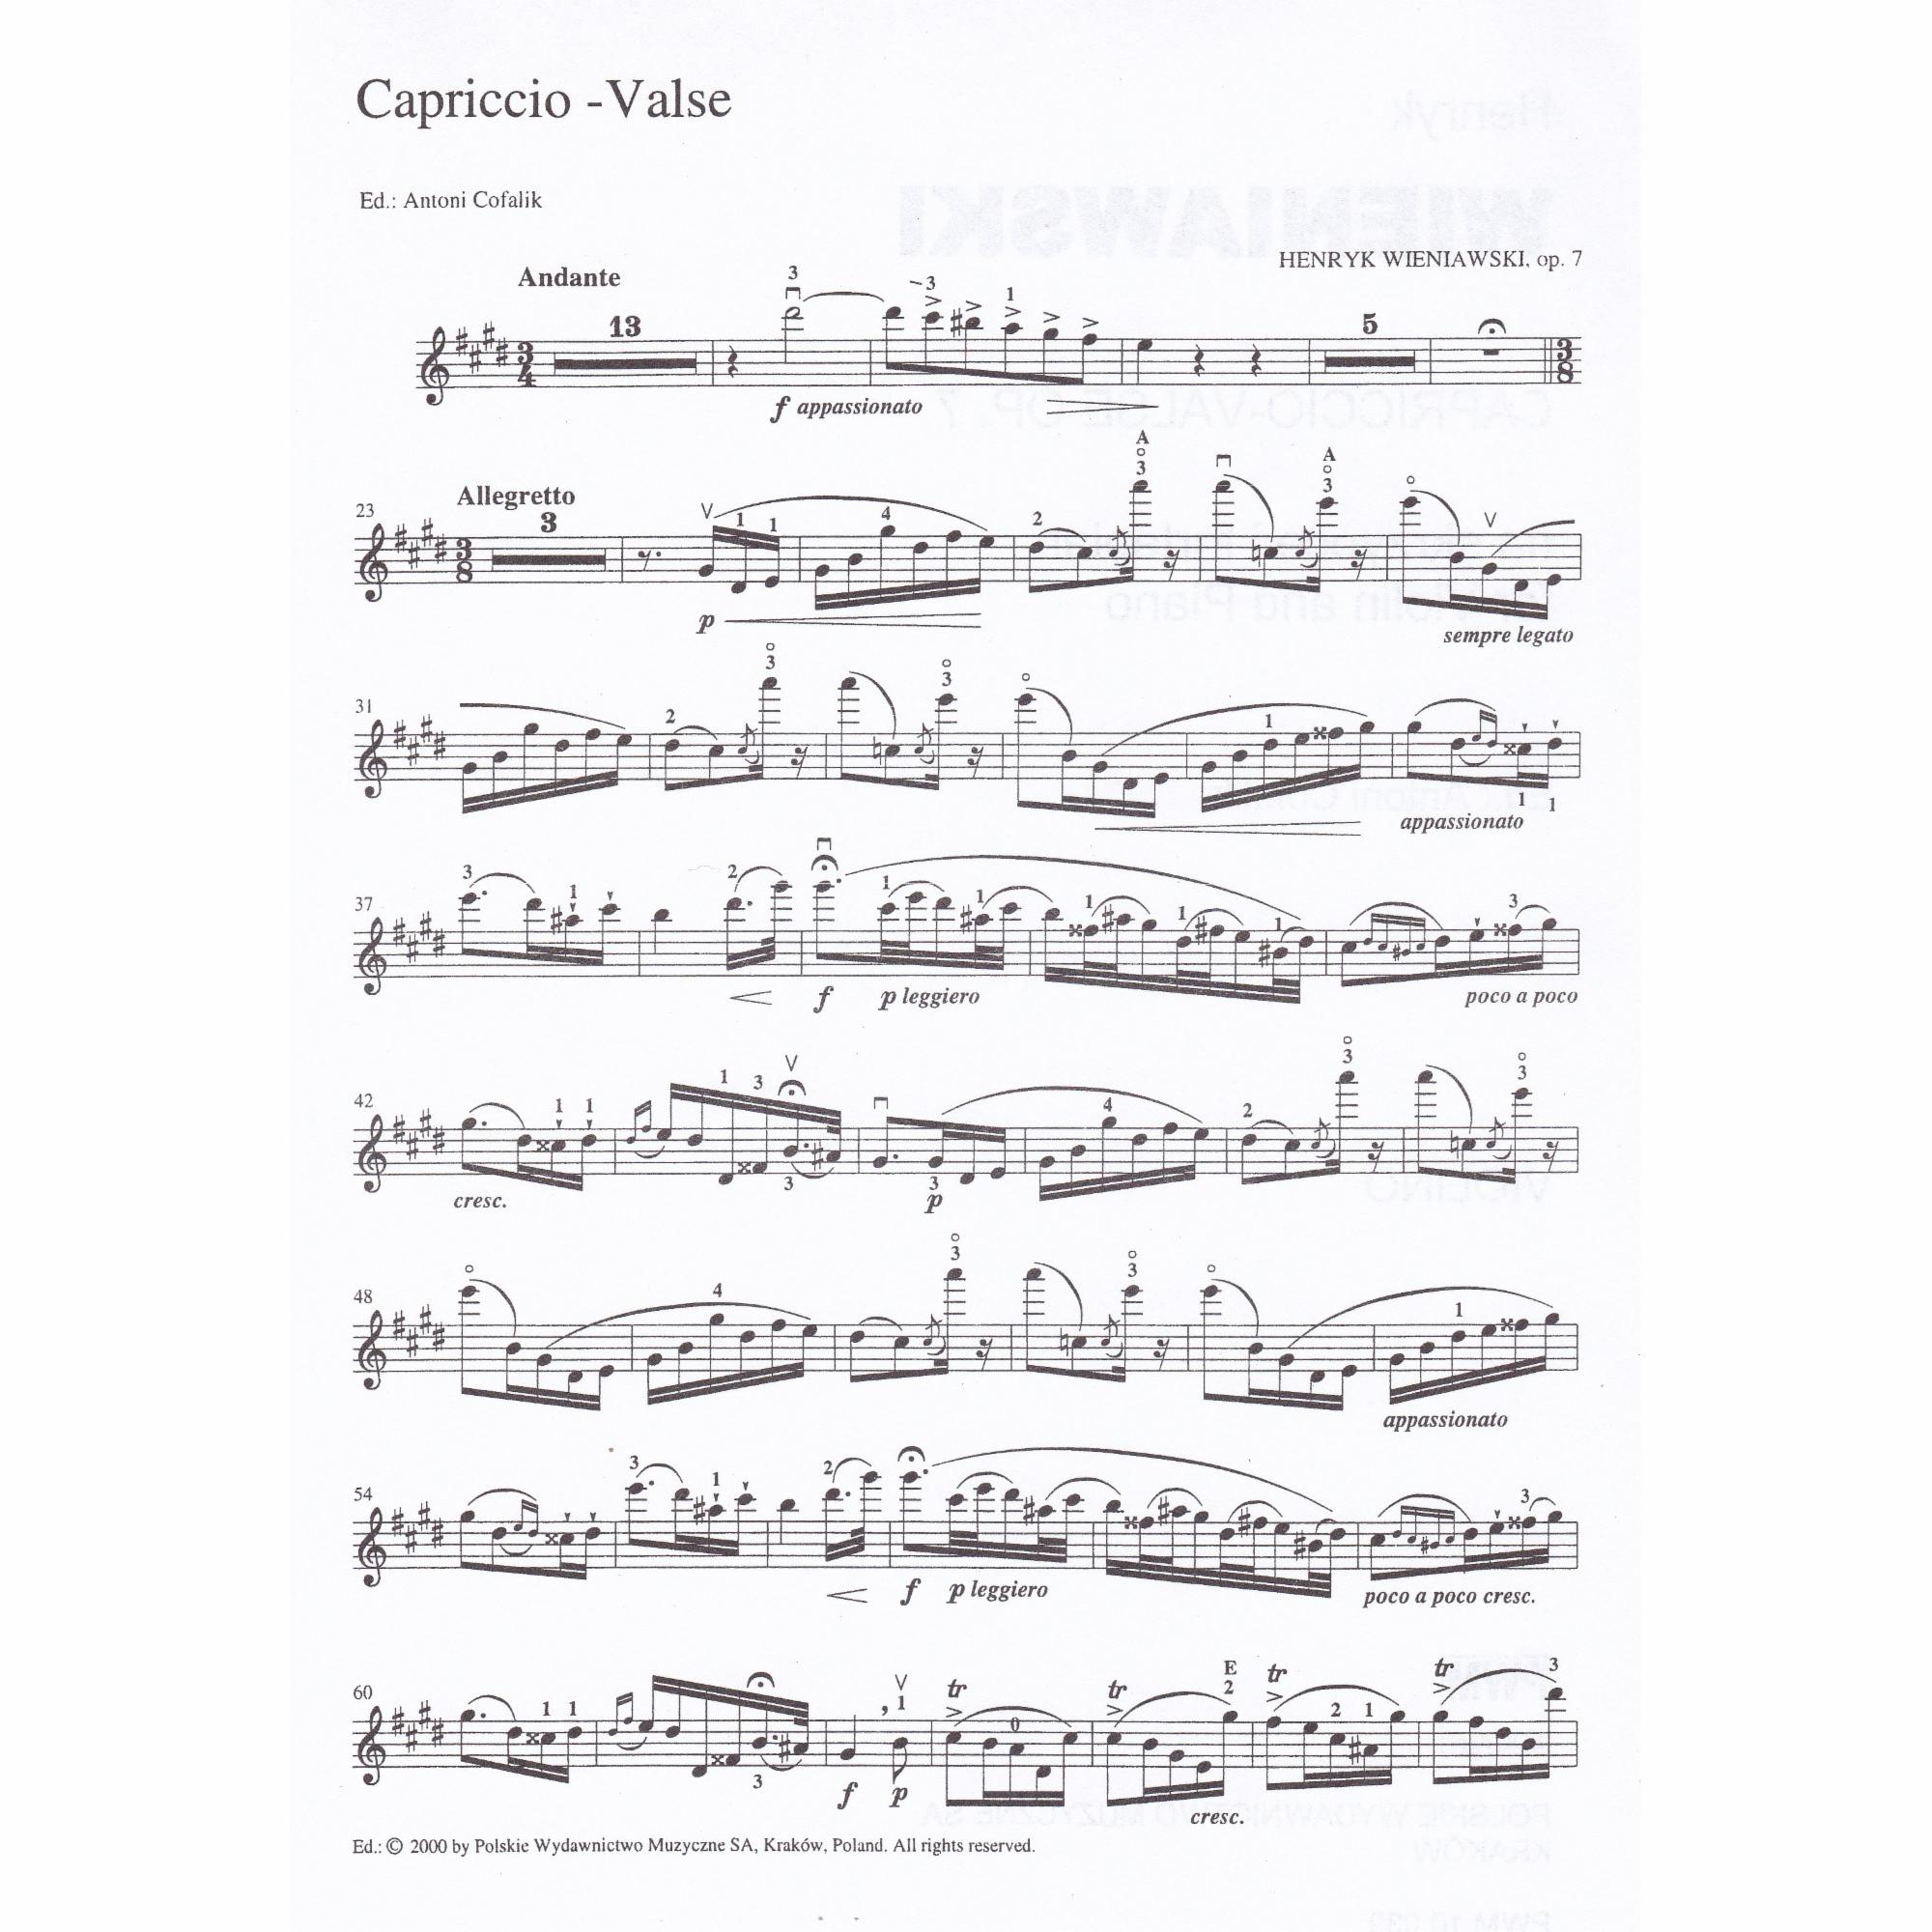 Capriccio-Valse in E Major for Violin and Piano, Op. 7